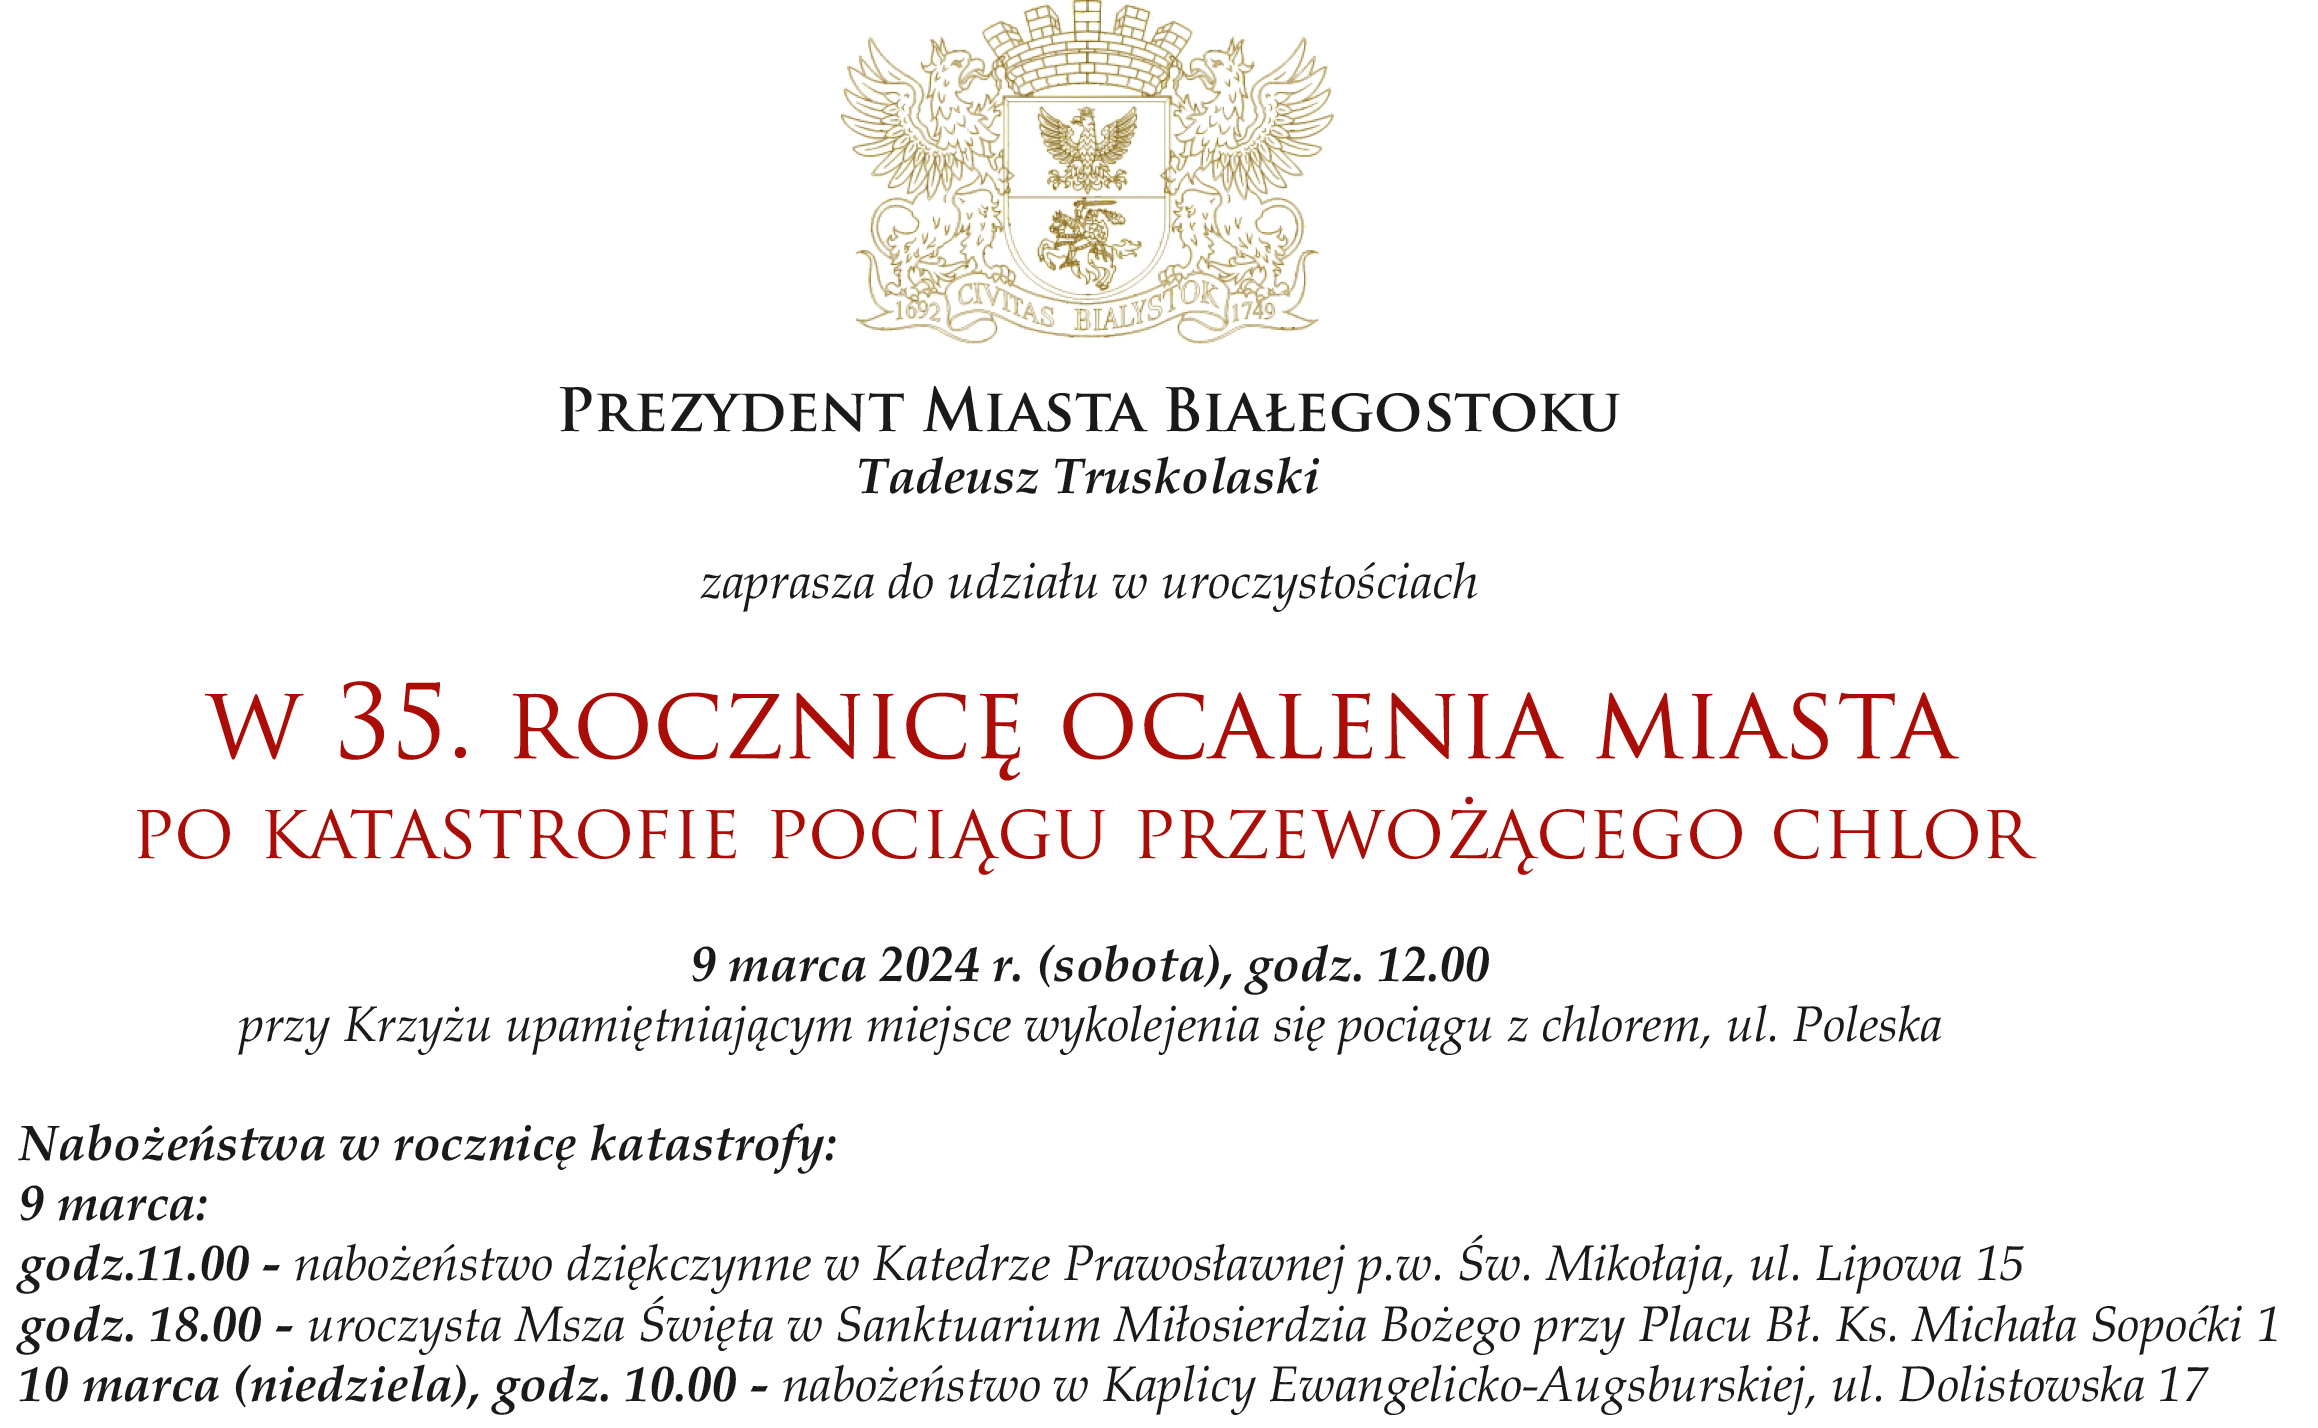 Prezydent Miasta Białegostoku Tadeusz Truskolaski zaprasza na 35. rocznicę ocalenia miasta po katastrofie pociągu przewożącego chlor. 9 marca 2024 (sobota) godz. 12:00